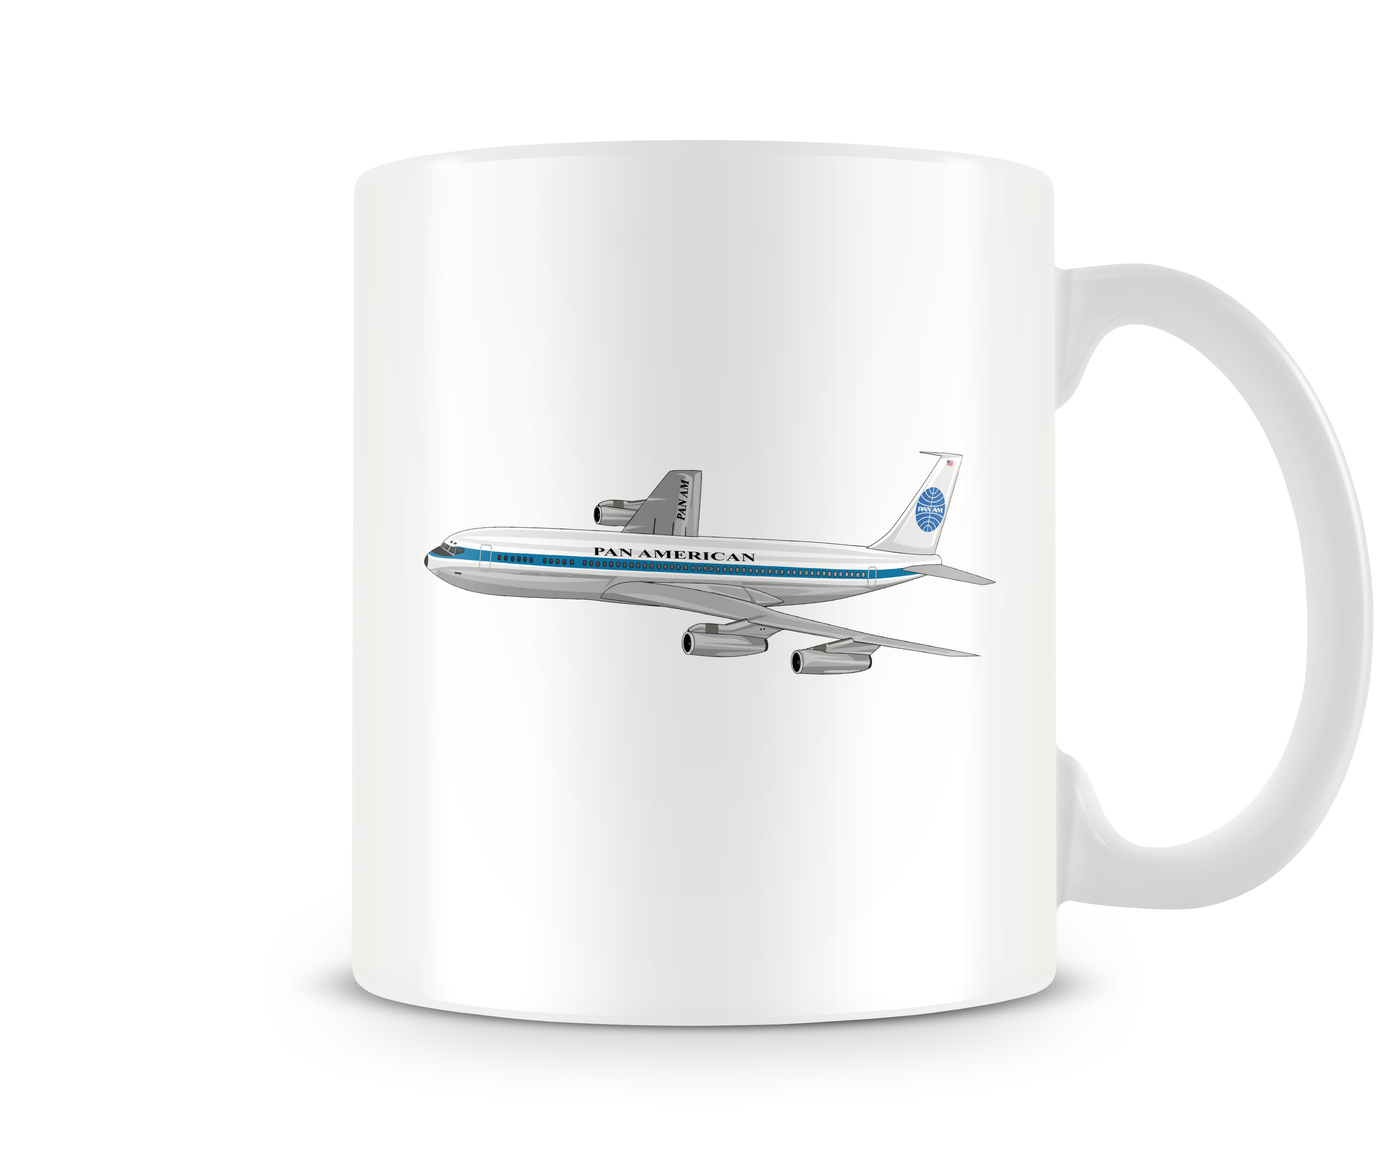 Pan Am Boeing 707 Mug